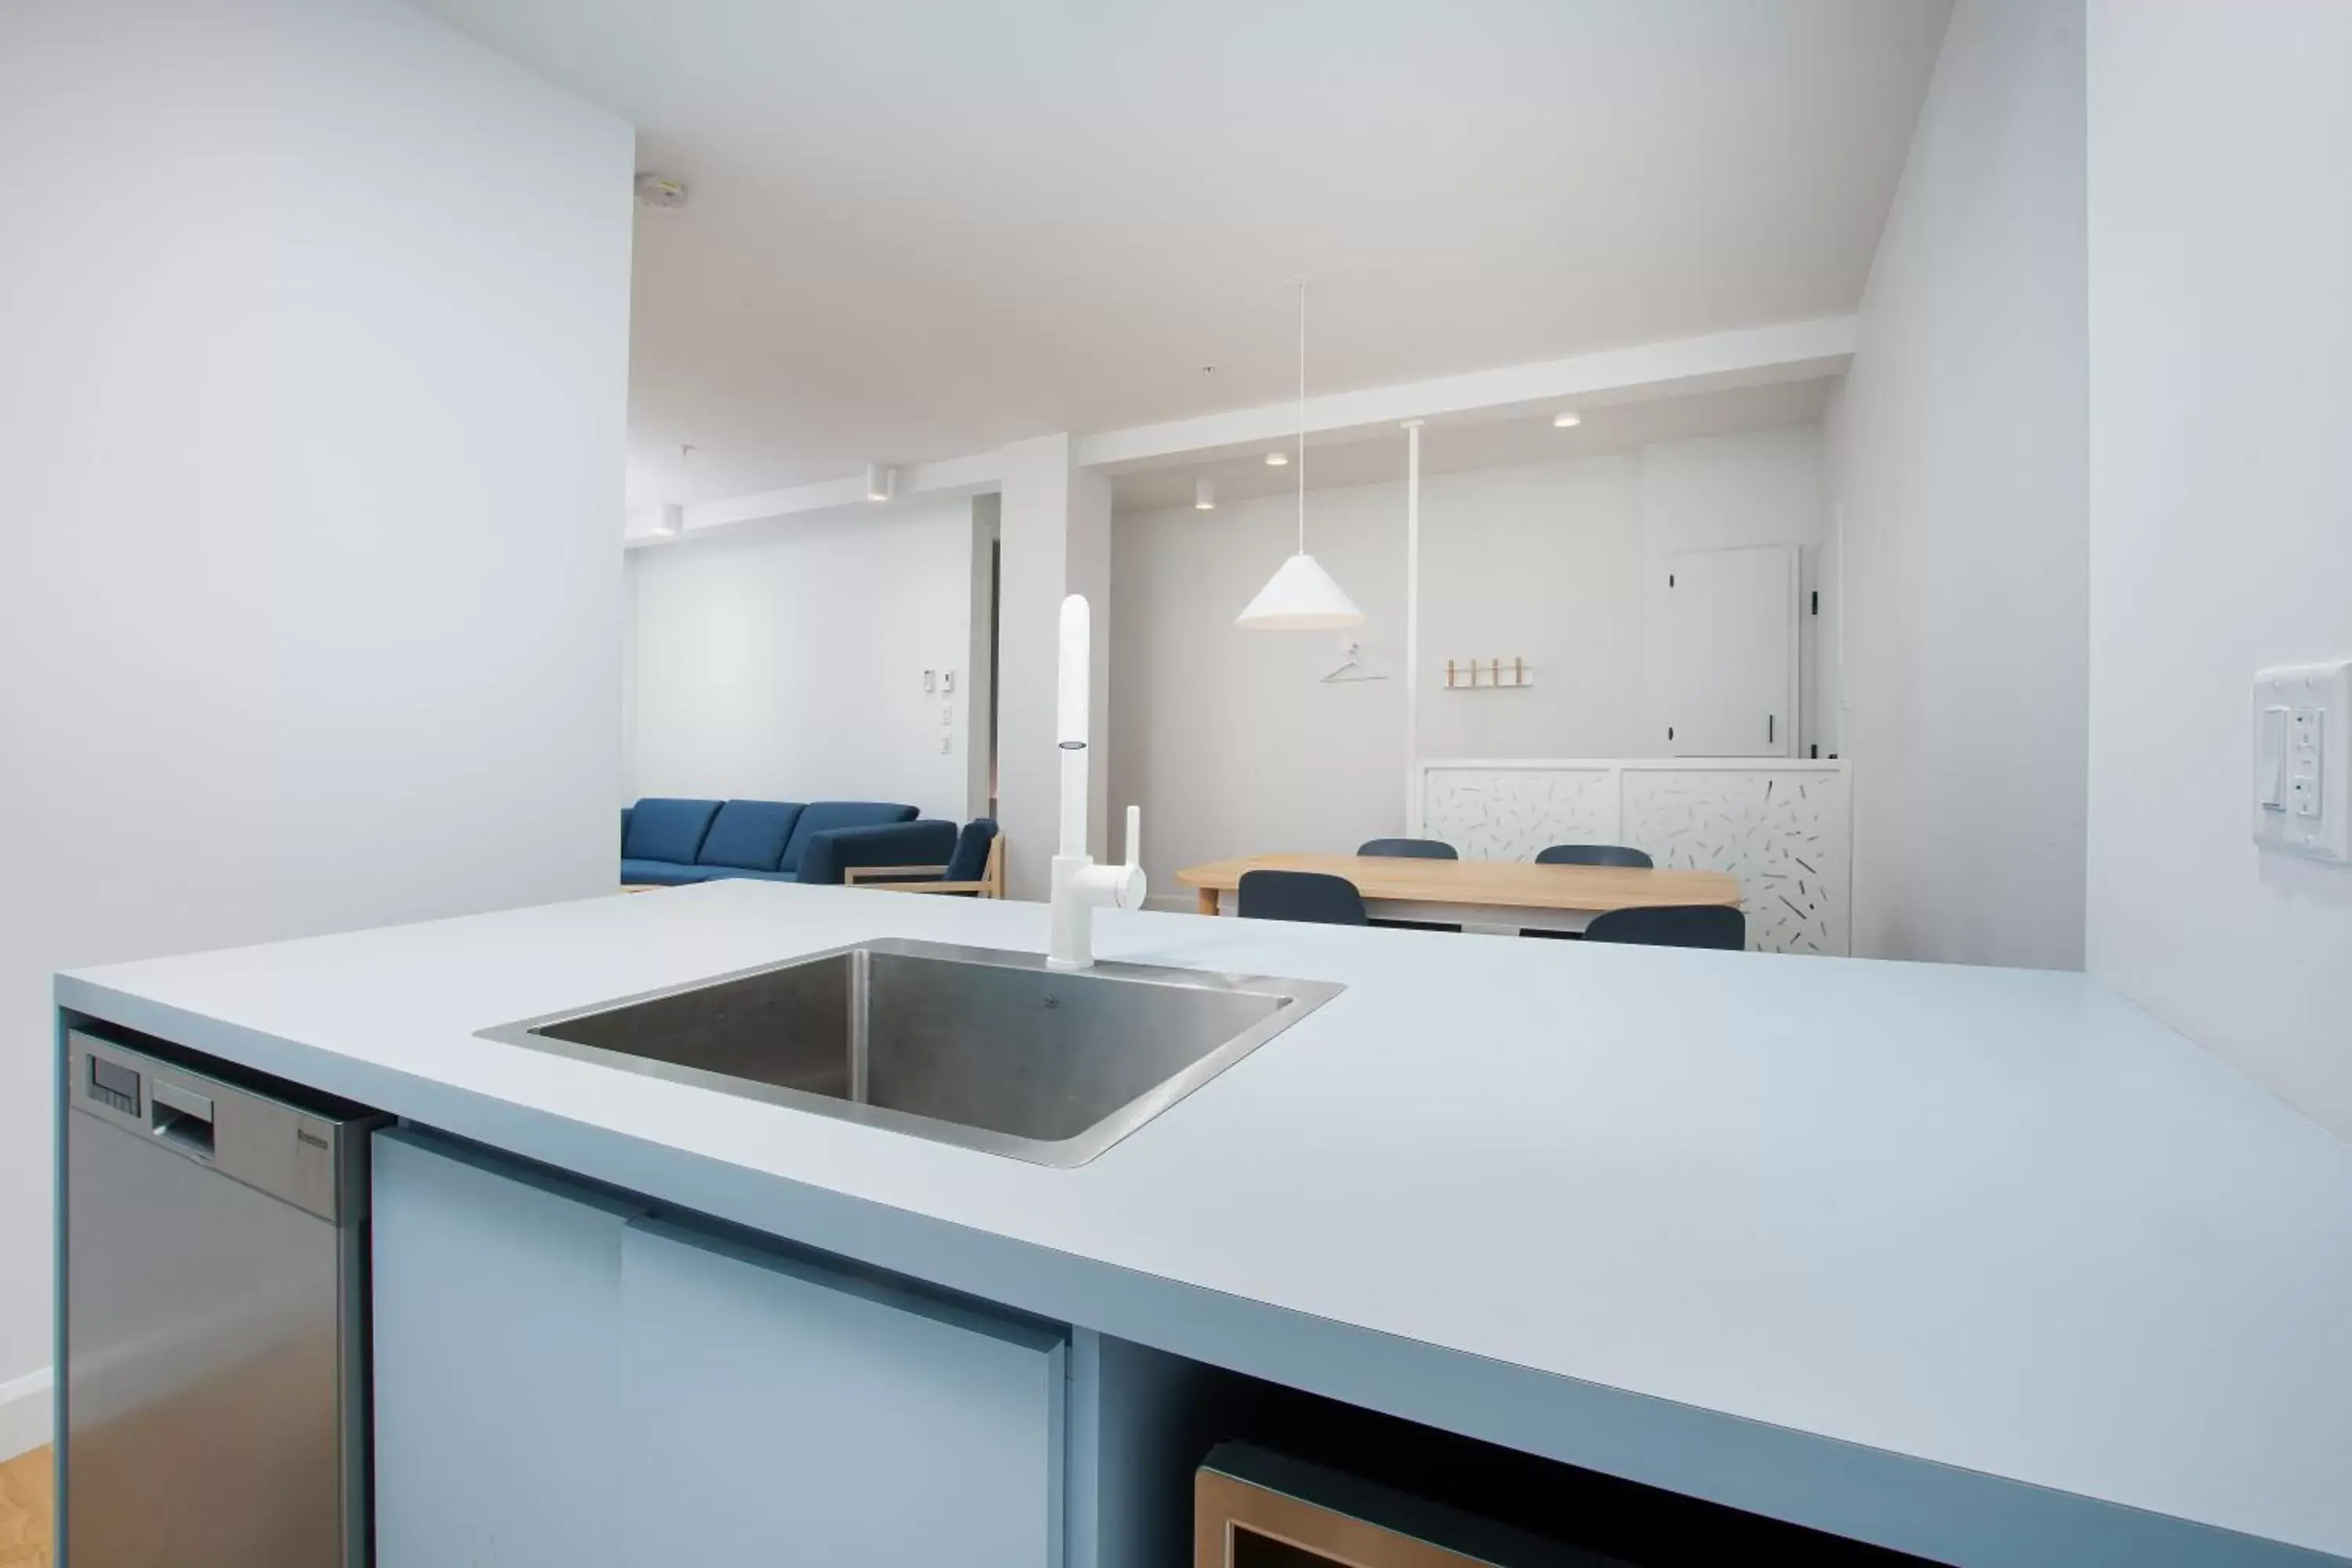 2-bedroom apartment with private terrace - SF202 in Les Lofts St-François - Par Les Lofts Vieux-Quebec